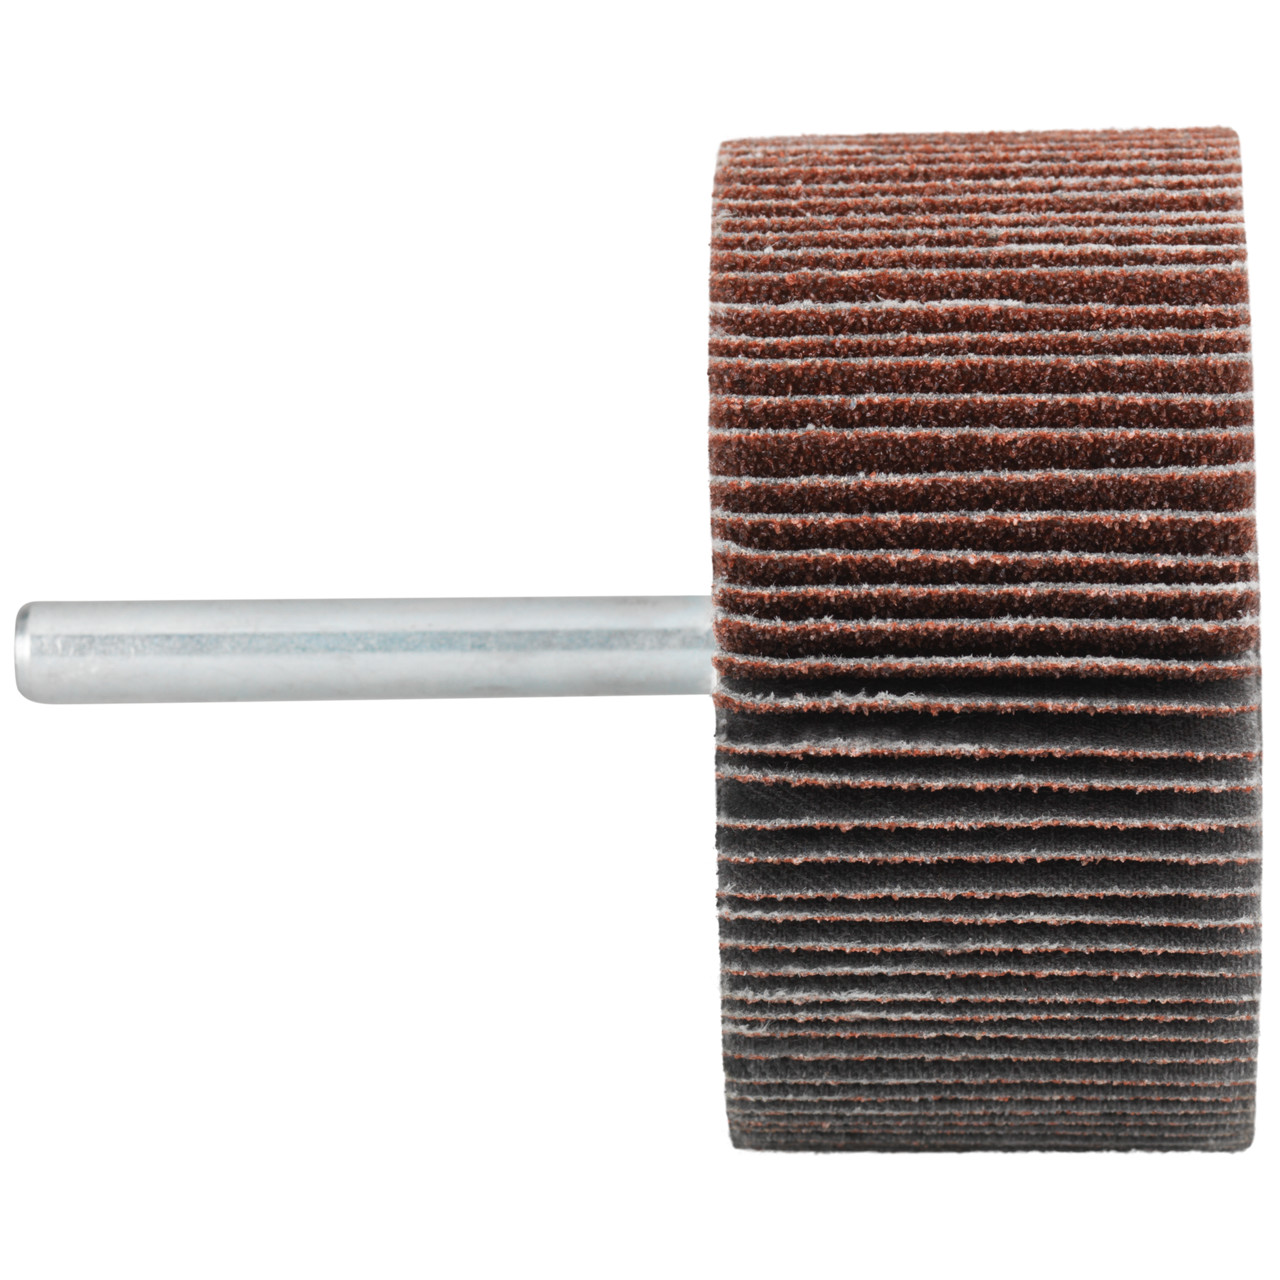 Tyrolit A-P01 C X Pennen DxD 50x30 Voor staal, roestvast staal en non-ferrometalen, P120, vorm: 52LA, Art. 816942